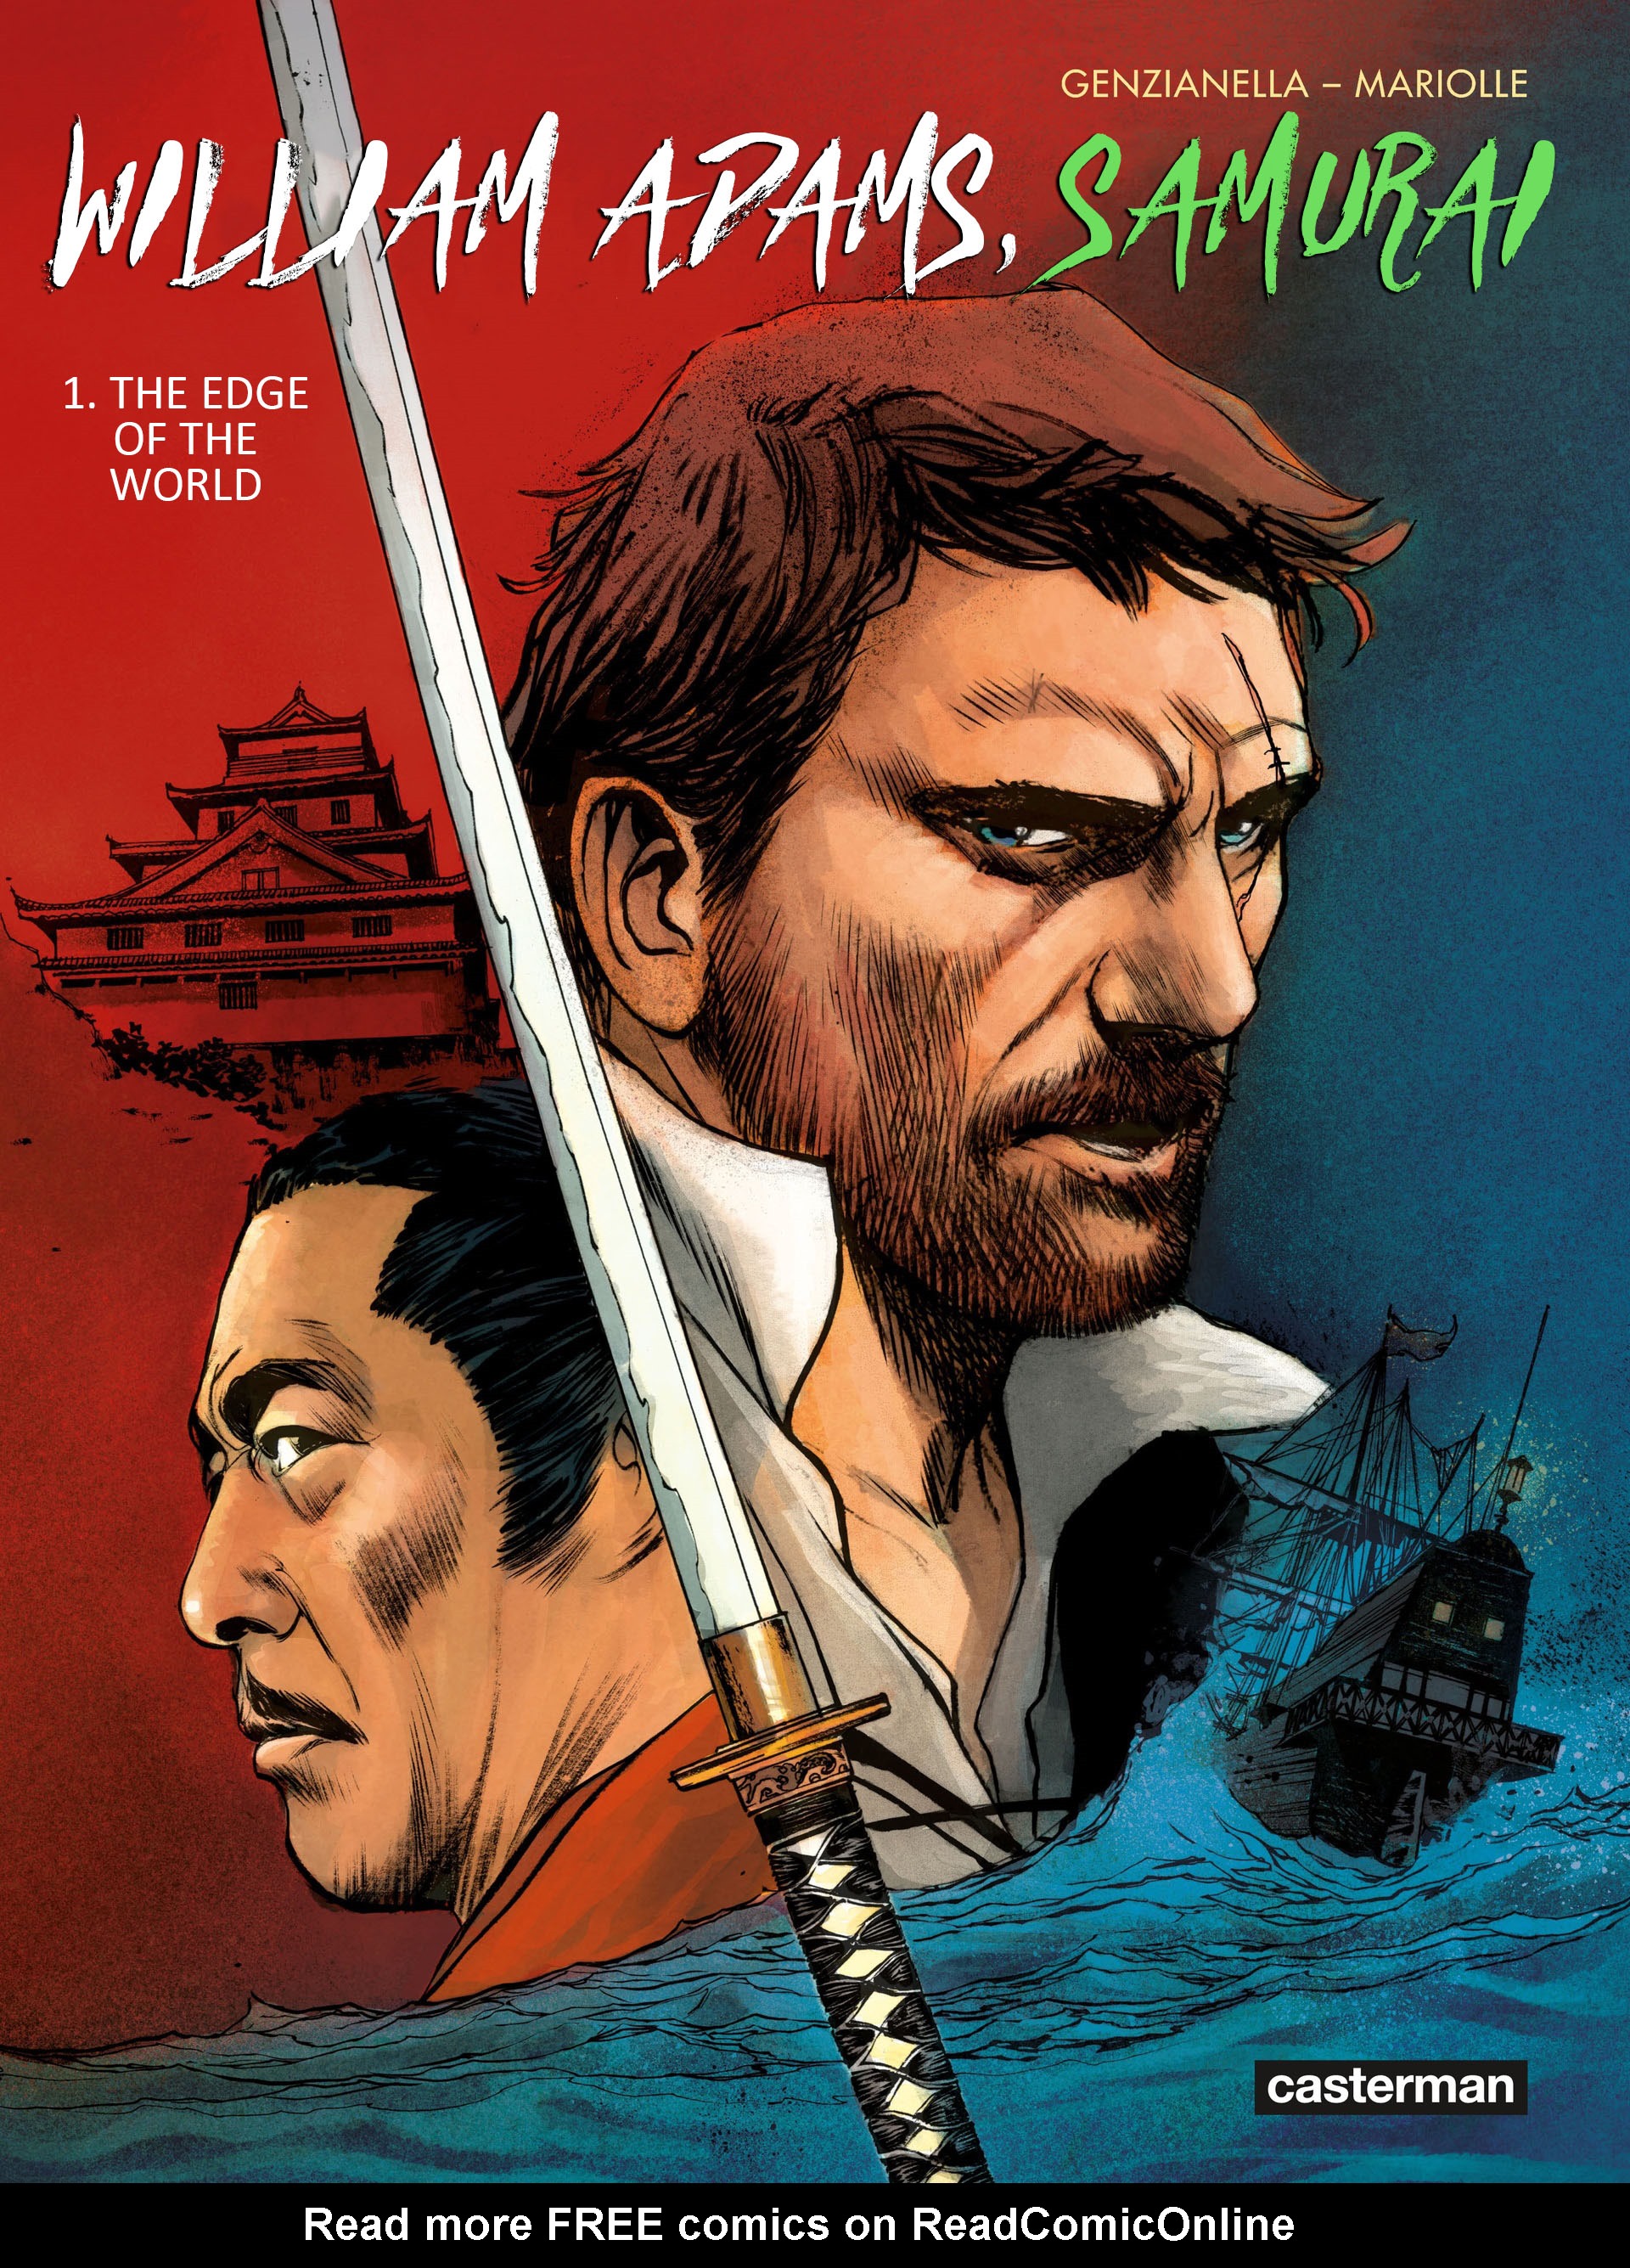 Read online William Adams, Samuraj comic -  Issue #1 - 1